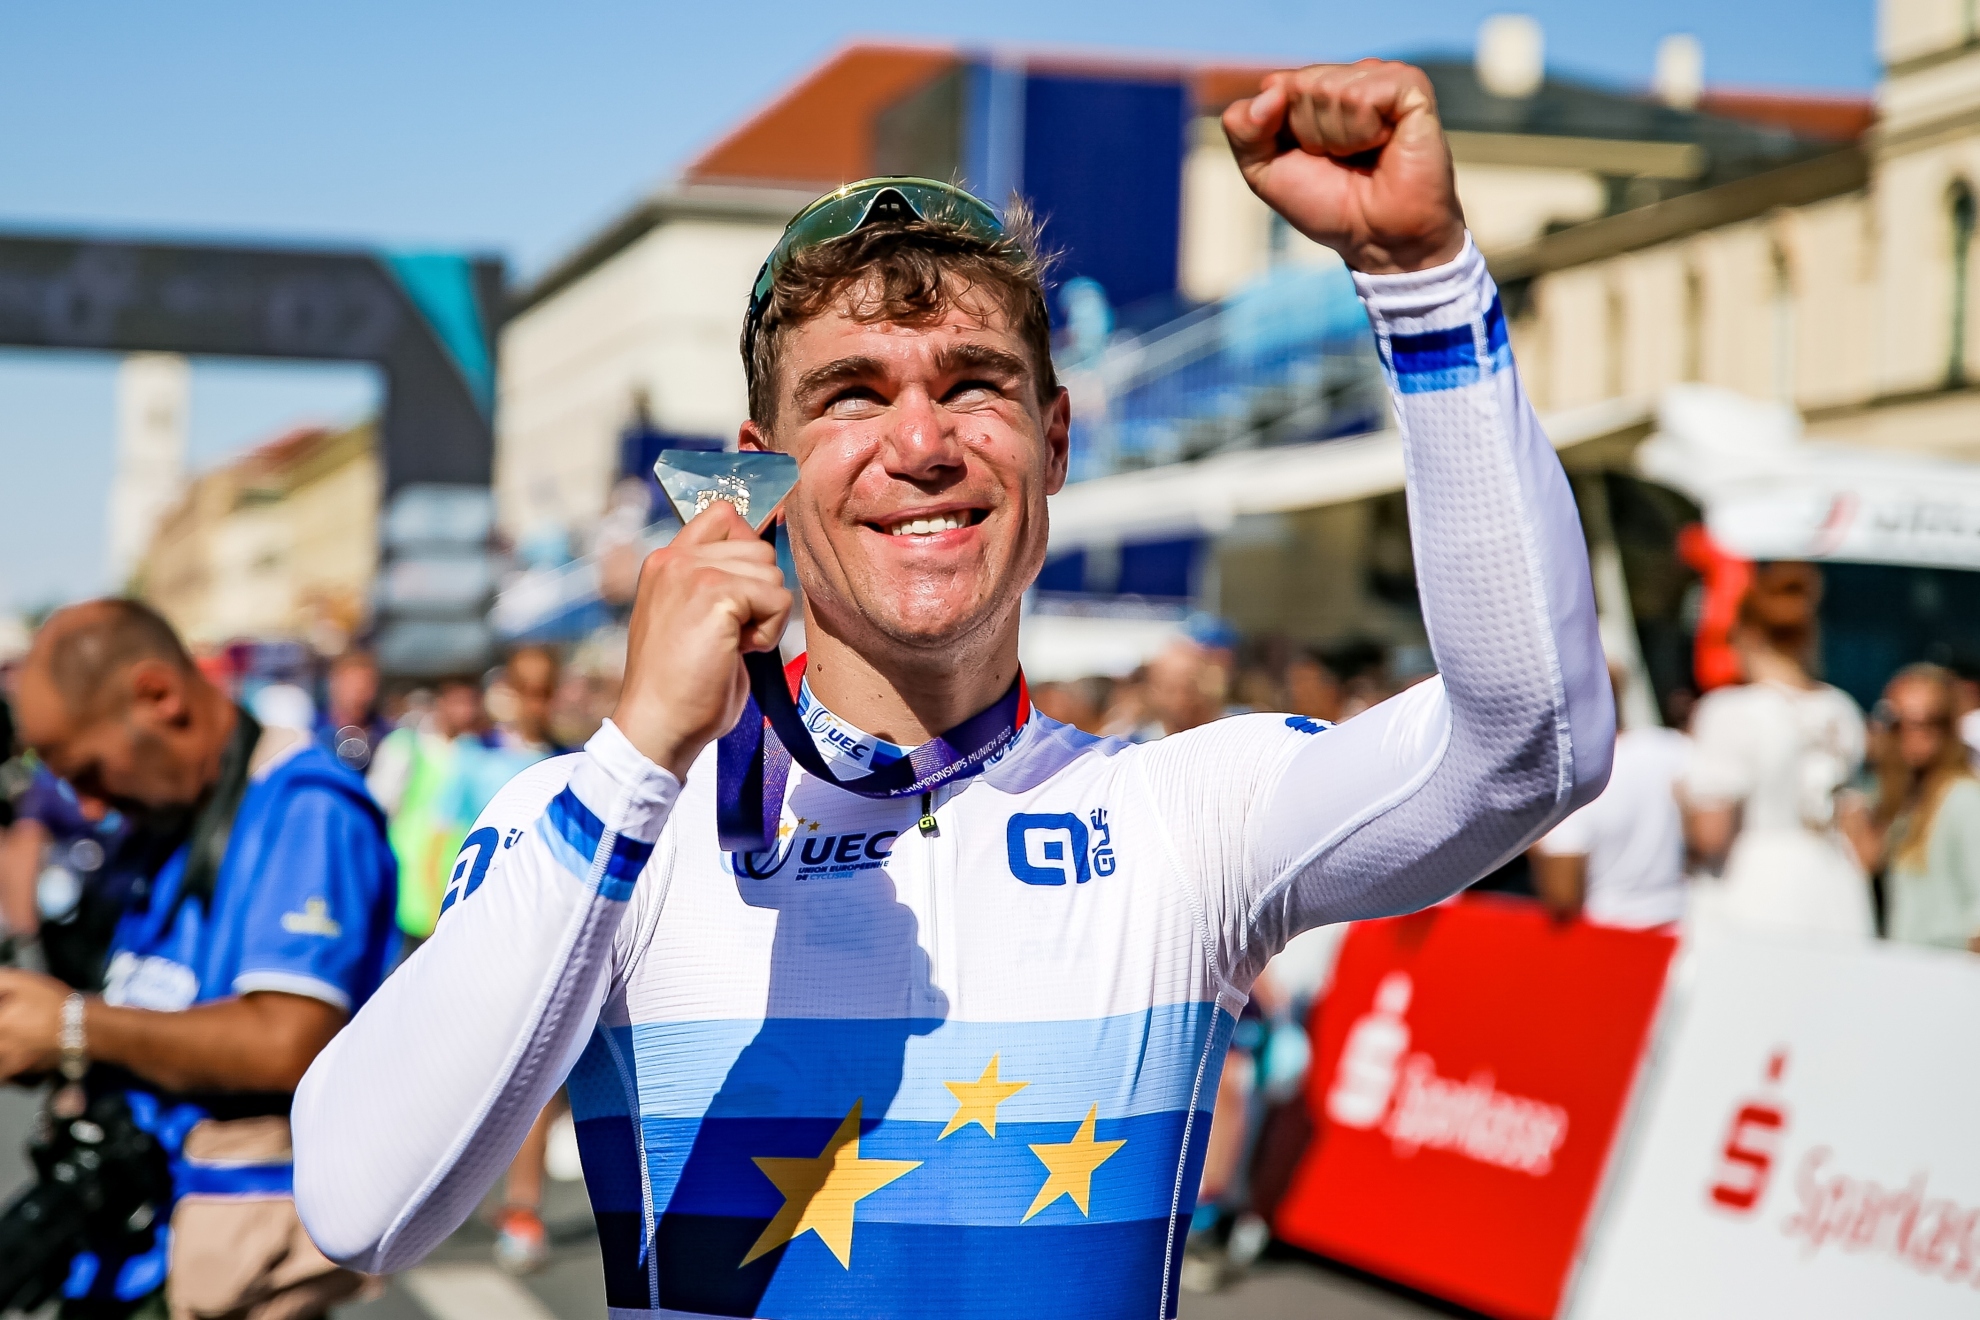 Fabio Jakobsen luce su medalla de oro de la prueba de ruta del Europeo de ciclismo. Foto: EFE